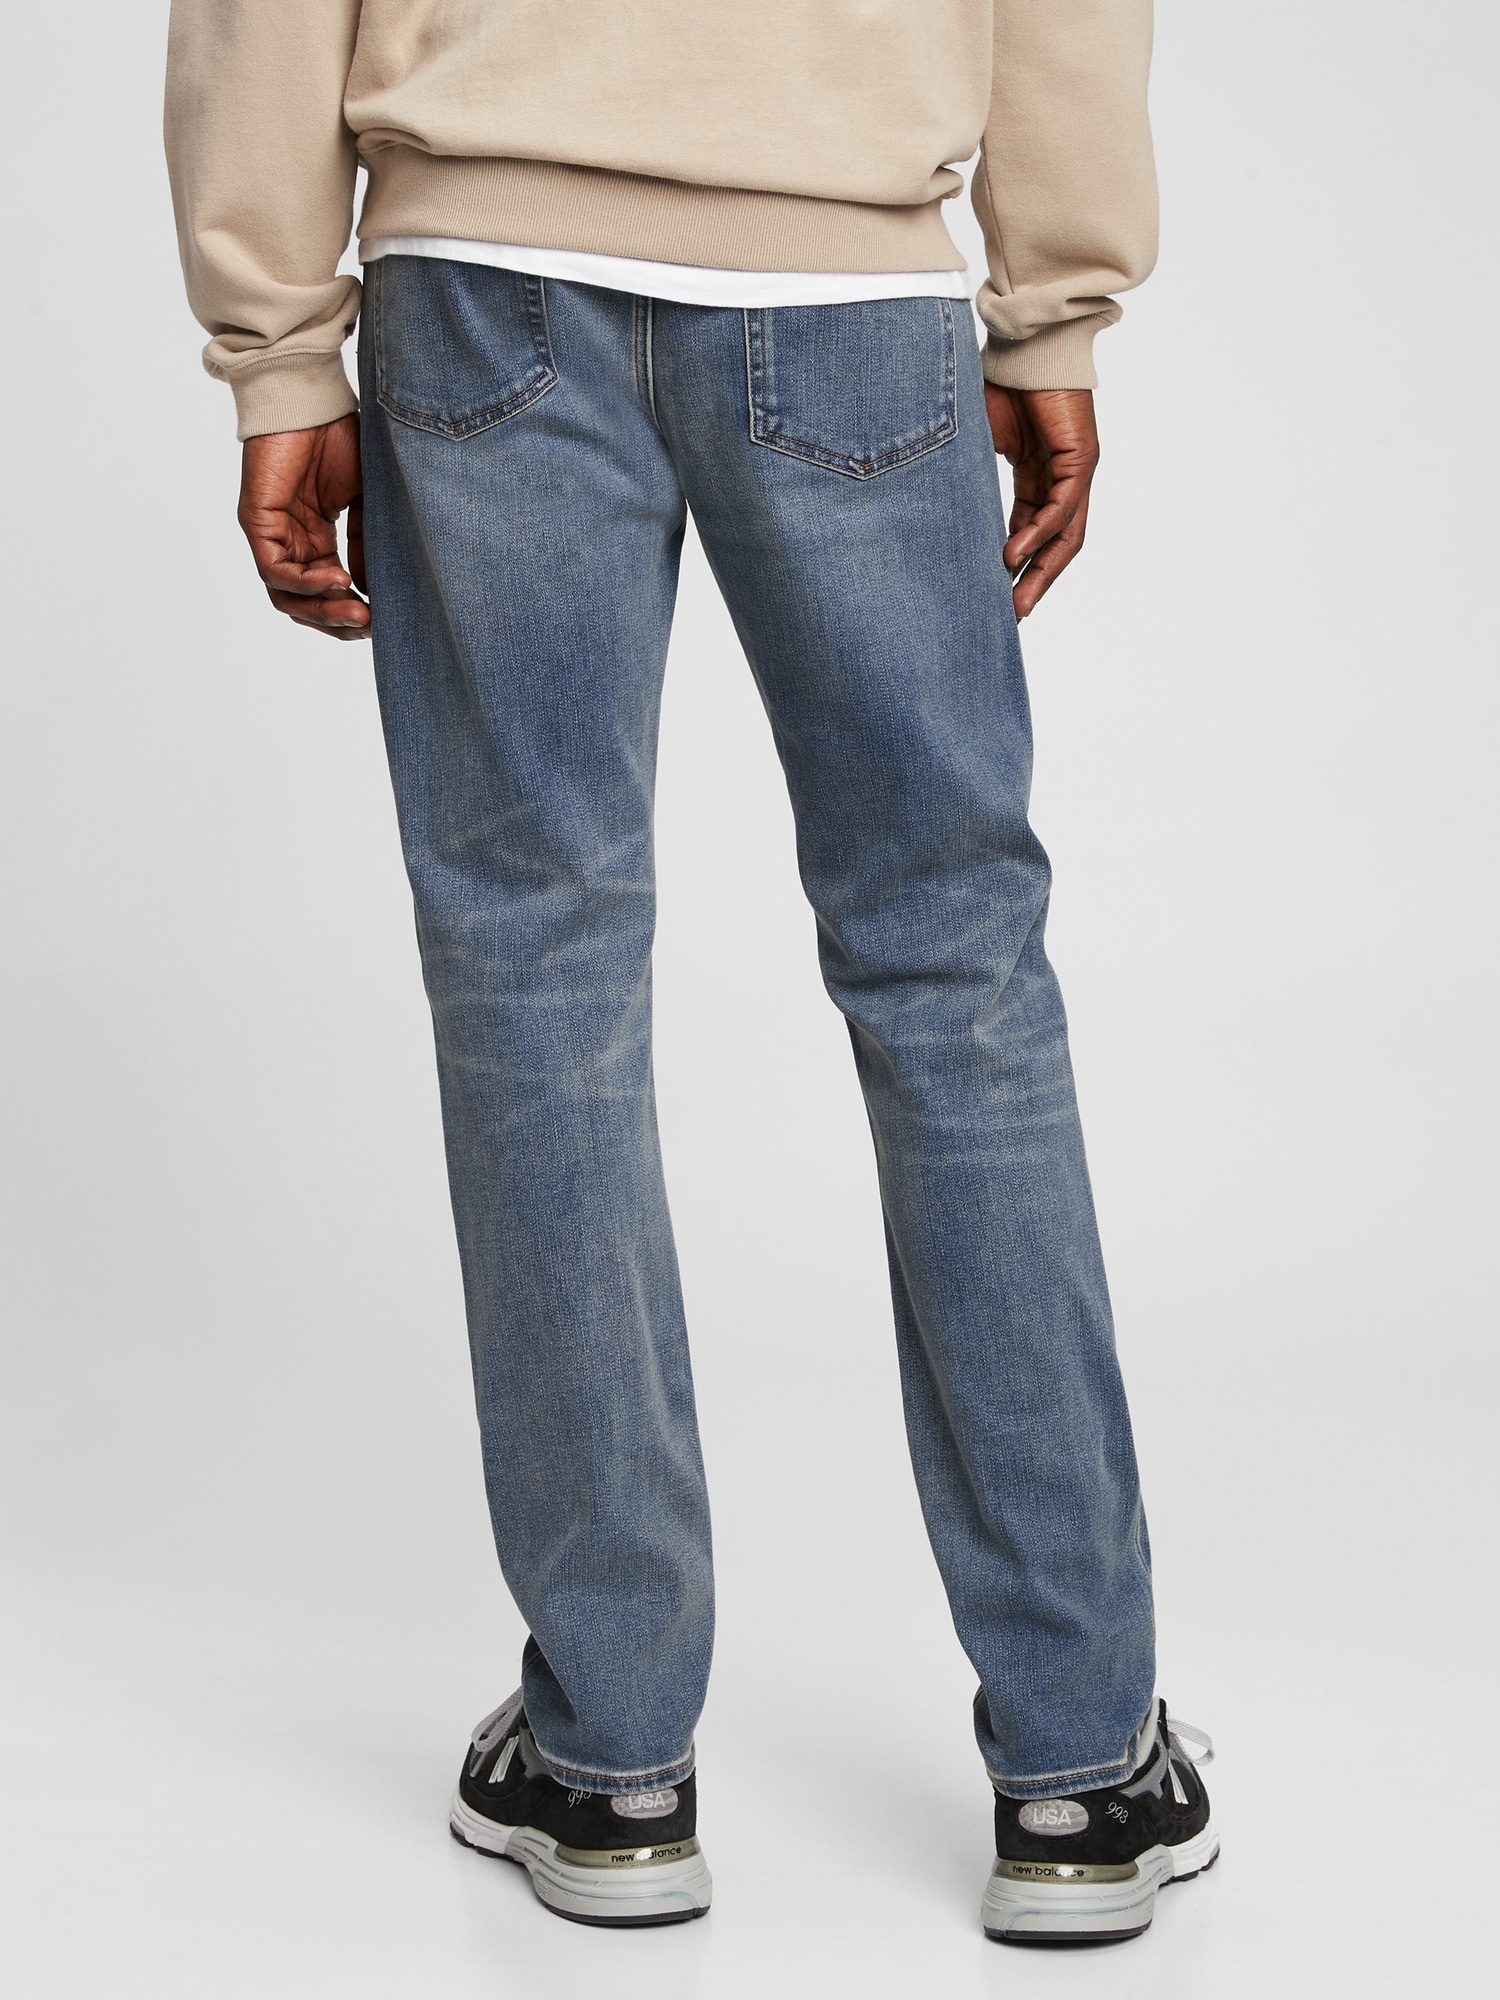 Gap Khaki Slim Fit Softwear jean 30X30 NWT